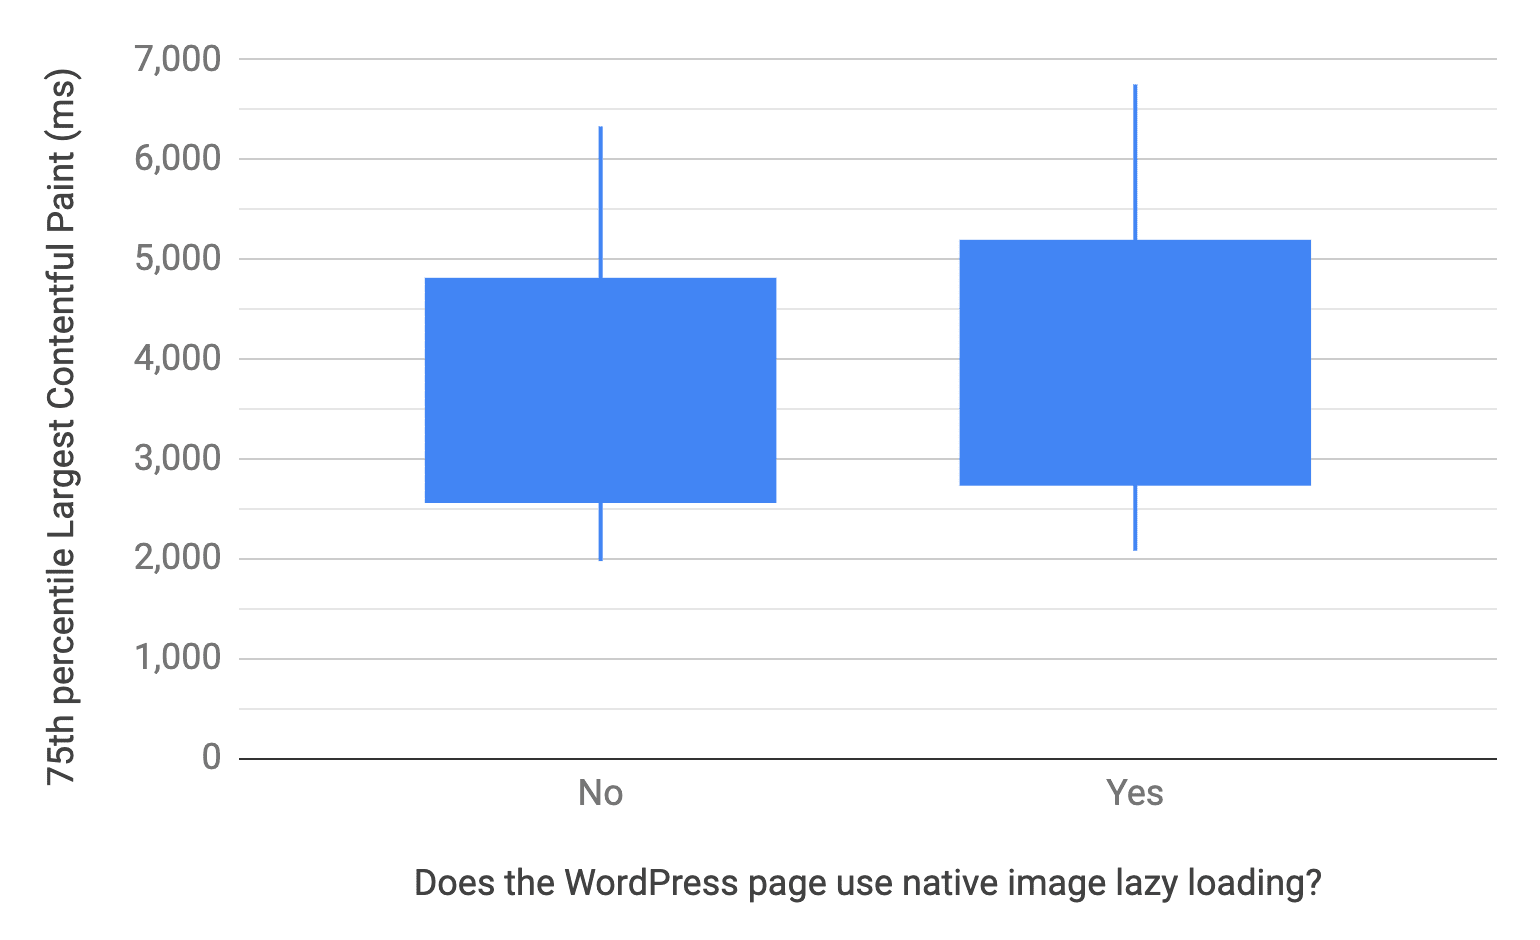 बॉक्स और व्हिस्कर चार्ट में, WordPress पेजों के लिए 10, 25, 75, और 90वें पर्सेंटाइल दिखाए गए हैं. ये ऐसे पेज हैं जो ब्राउज़र लेवल पर इमेज लेज़ी लोडिंग का इस्तेमाल करते हैं और नहीं भी करते हैं. तुलना के तौर पर, इस पेज का इस्तेमाल न करने वाले पेजों का एलसीपी डिस्ट्रिब्यूशन, पिछले चार्ट की तरह ही ज़्यादा तेज़ी से डिस्ट्रिब्यूशन करता है.